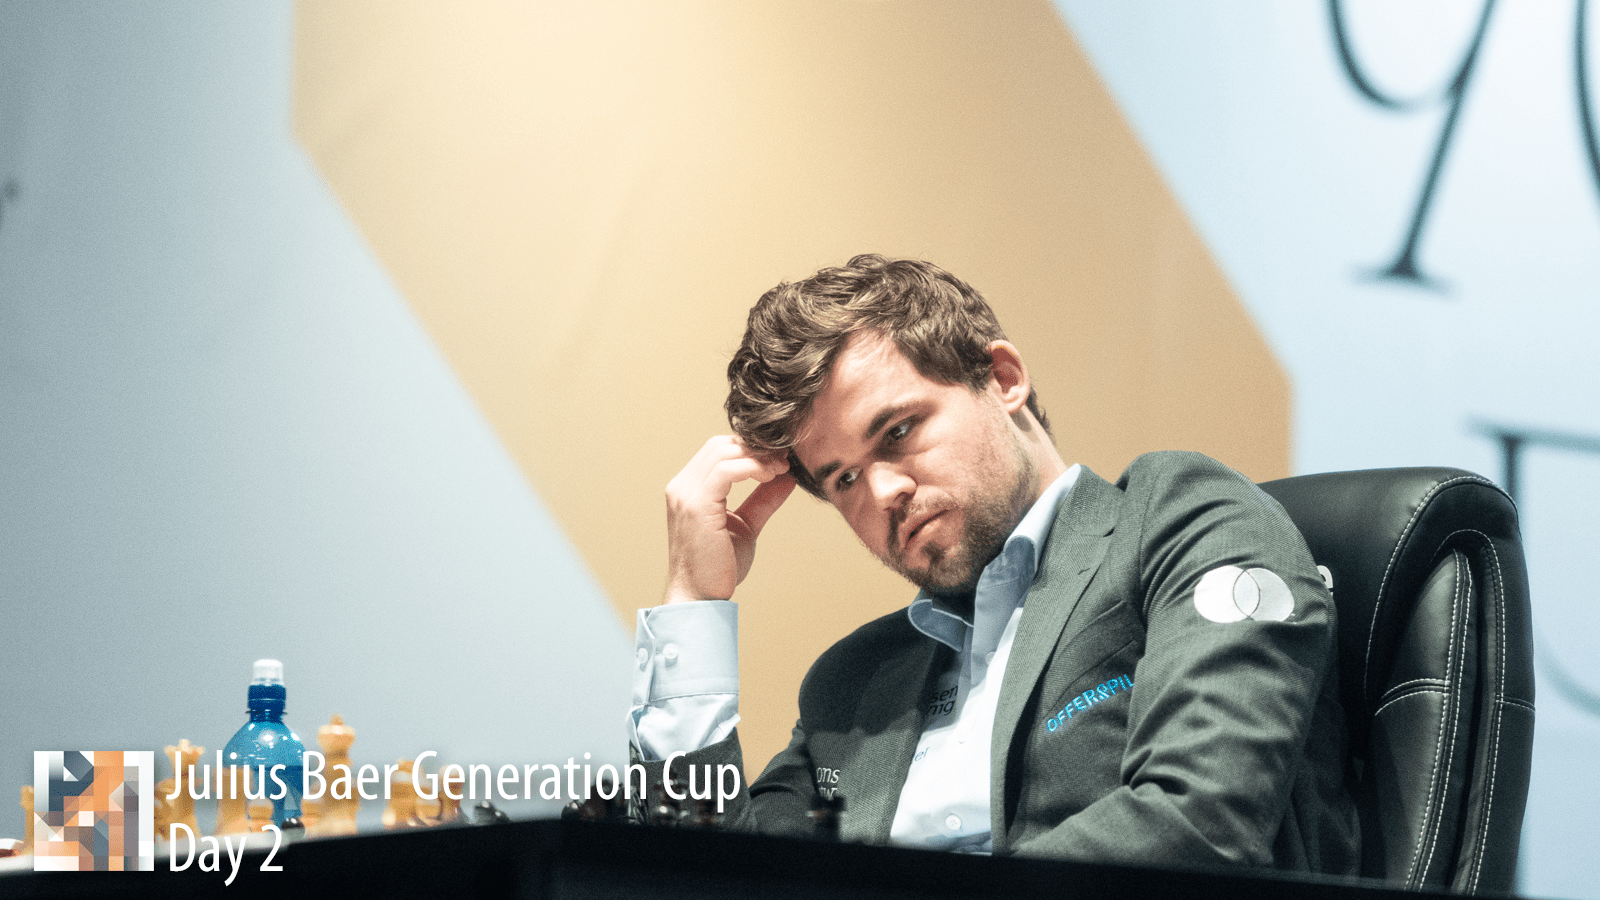 Chess: Anish Giri on Carlsen resigned against Niemann